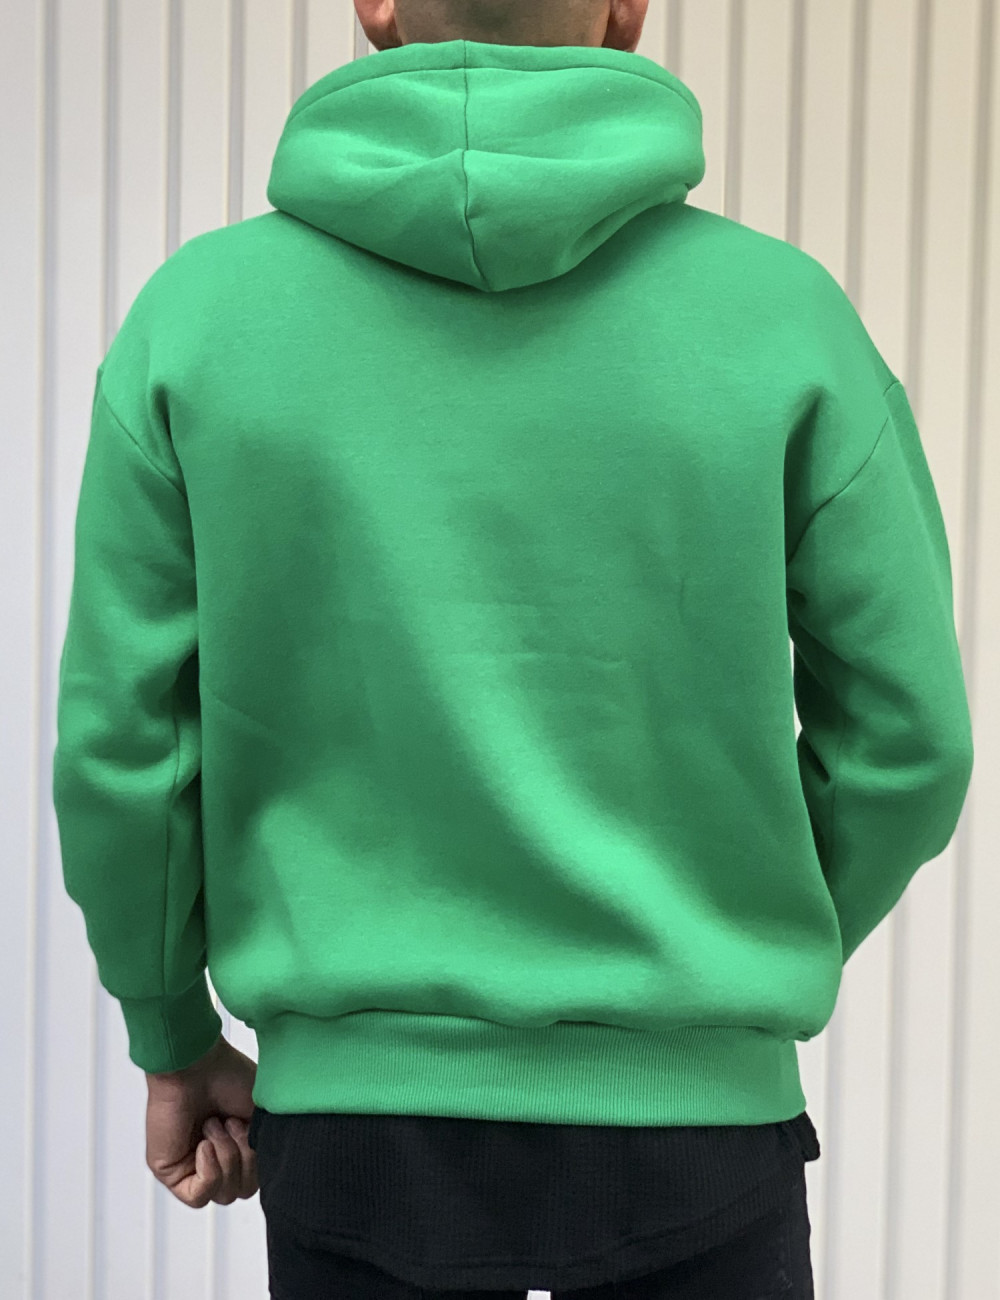 Ανδρικό oversized πράσινο φούτερ τύπωμα KB112